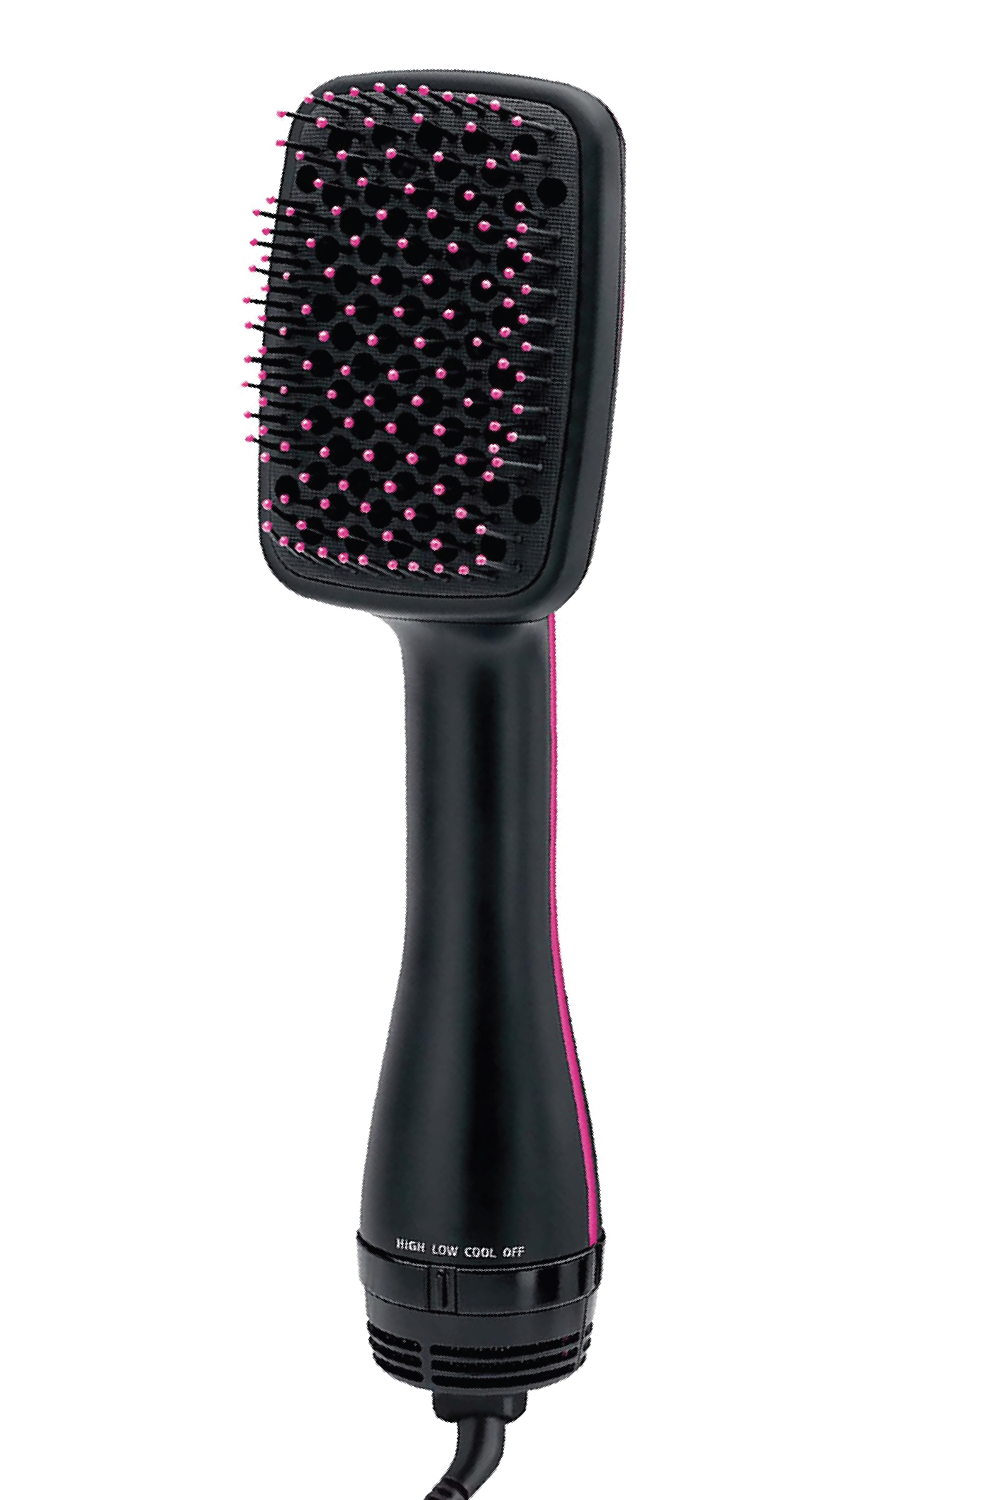 PRO HAIR STYLER 5in1 Ionizer  Hair Dryer  Hair Curler  Straightening  Brush  Volumizer